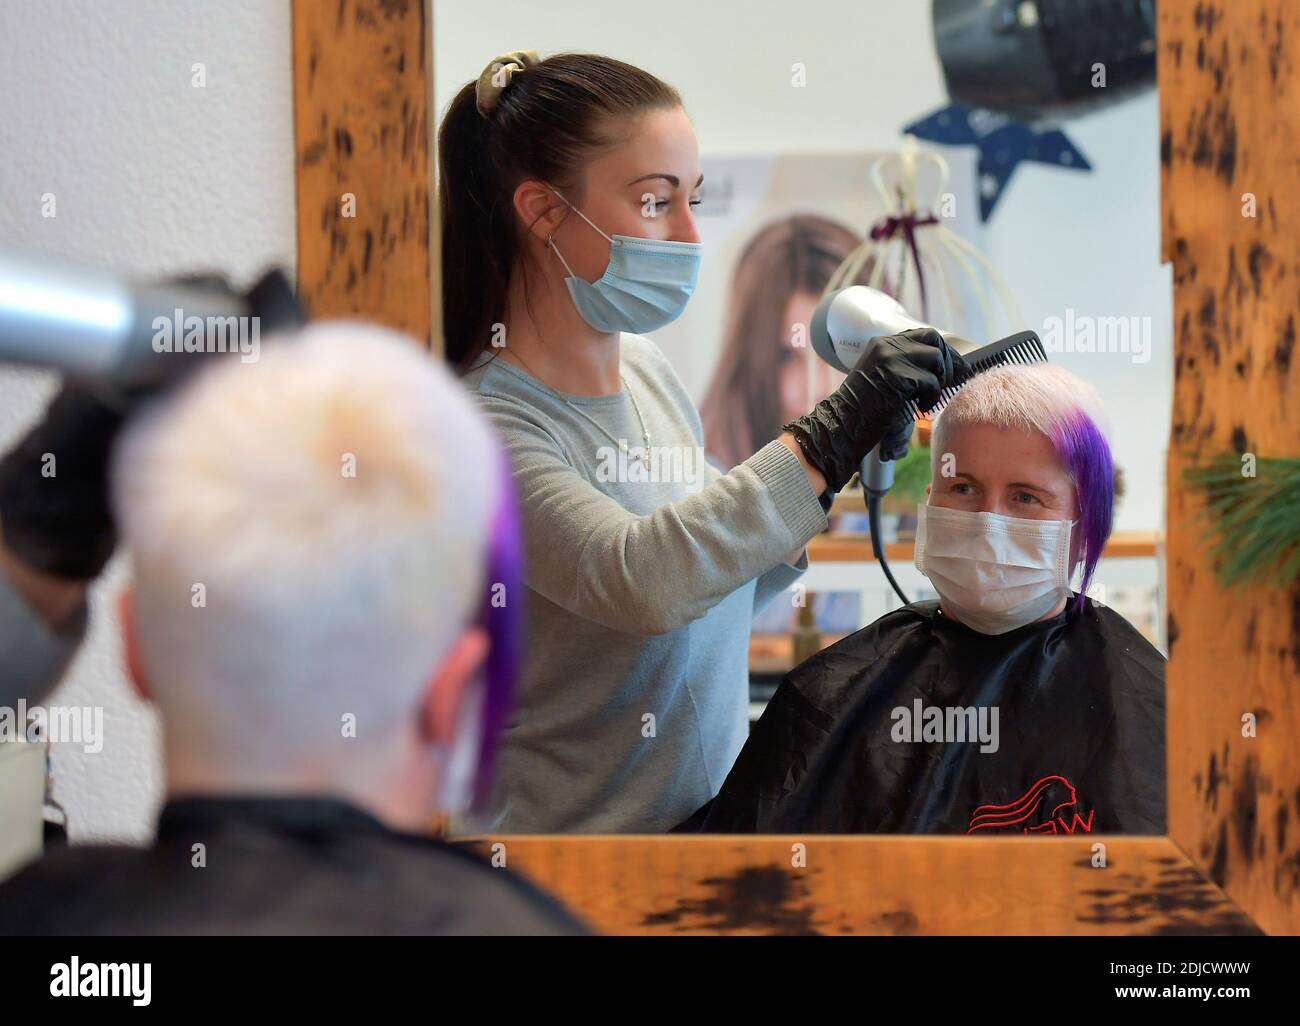 La coiffeuse Nicole Kretschmer travaille dans son salon avant sa fermeture en raison du confinement de la maladie du coronavirus (COVID-19), à Dresde, Allemagne le 14 décembre 2020. REUTERS/Matthias Rietschel Banque D'Images